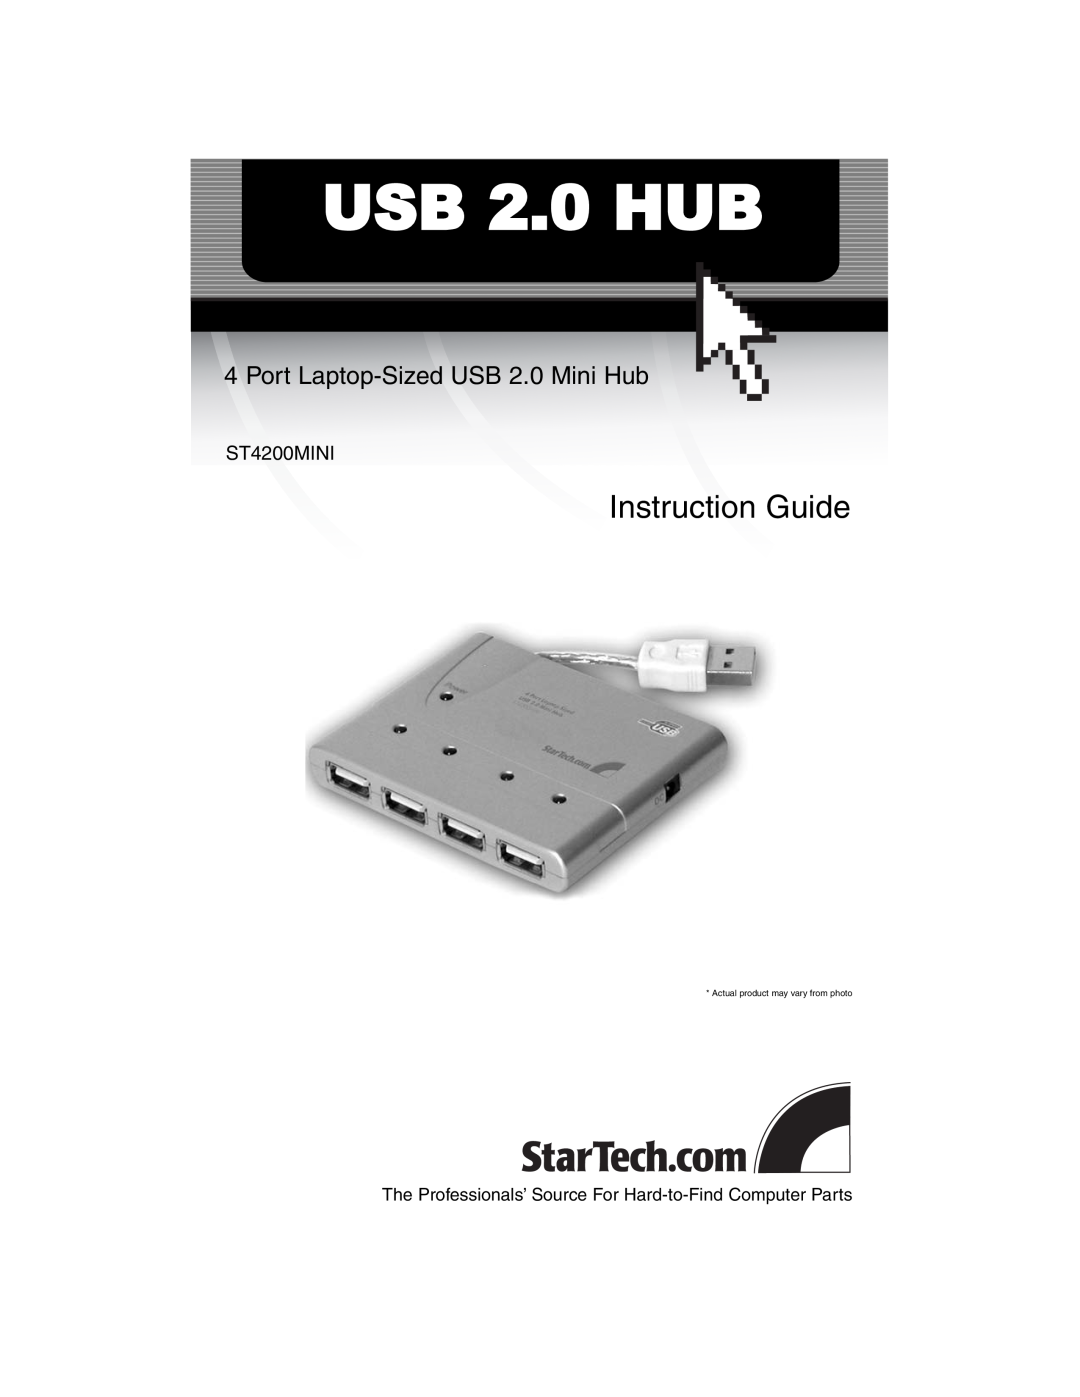 StarTech.com ST4200MINI manual USB 2.0 HUB, Instruction Guide, Port Laptop-Sized USB 2.0 Mini Hub 